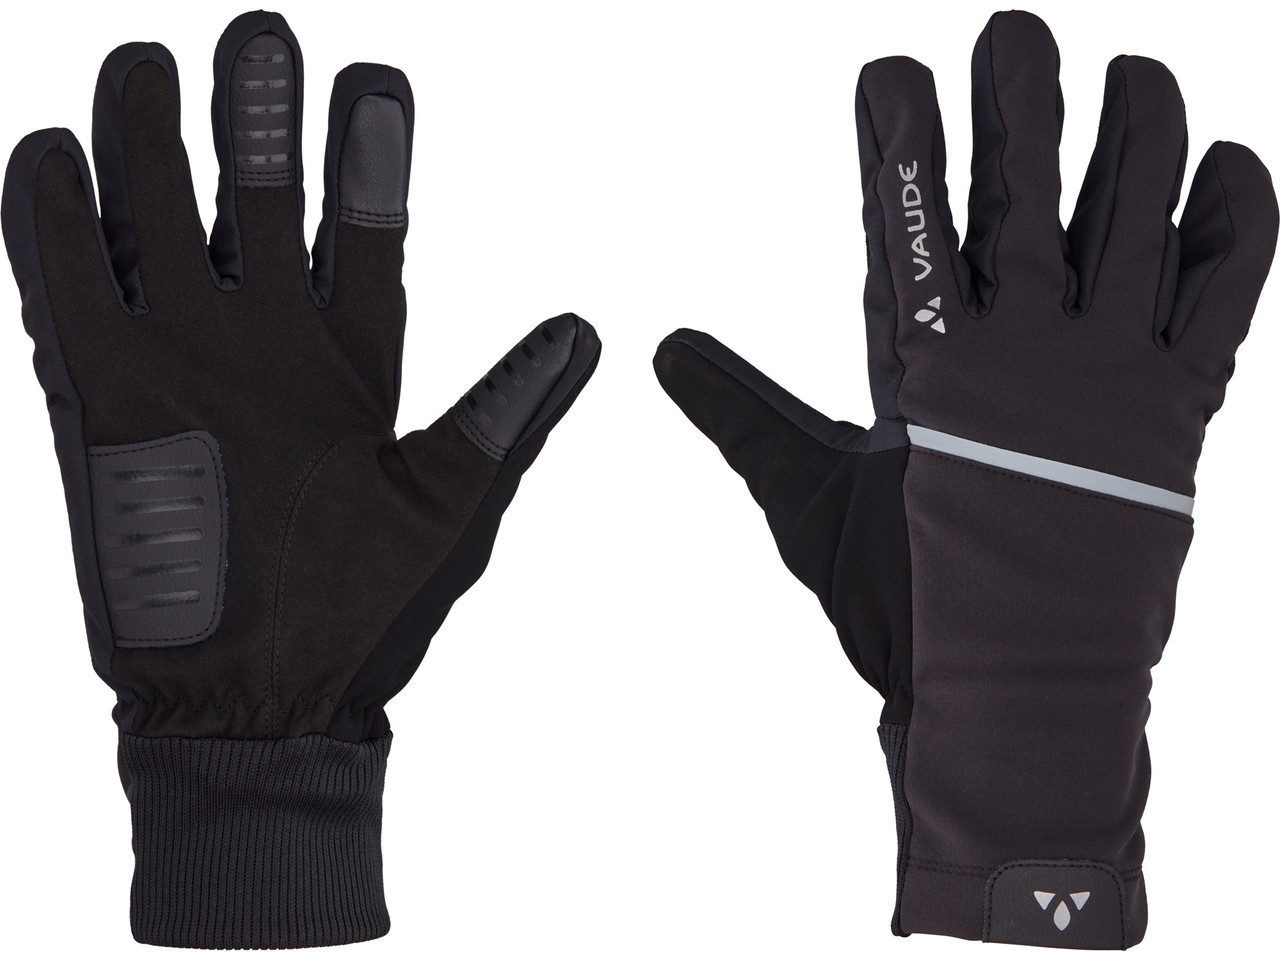 Exclusive Design VAUDE - 68% of people II the All Hanko | Full Gloves Finger Discount